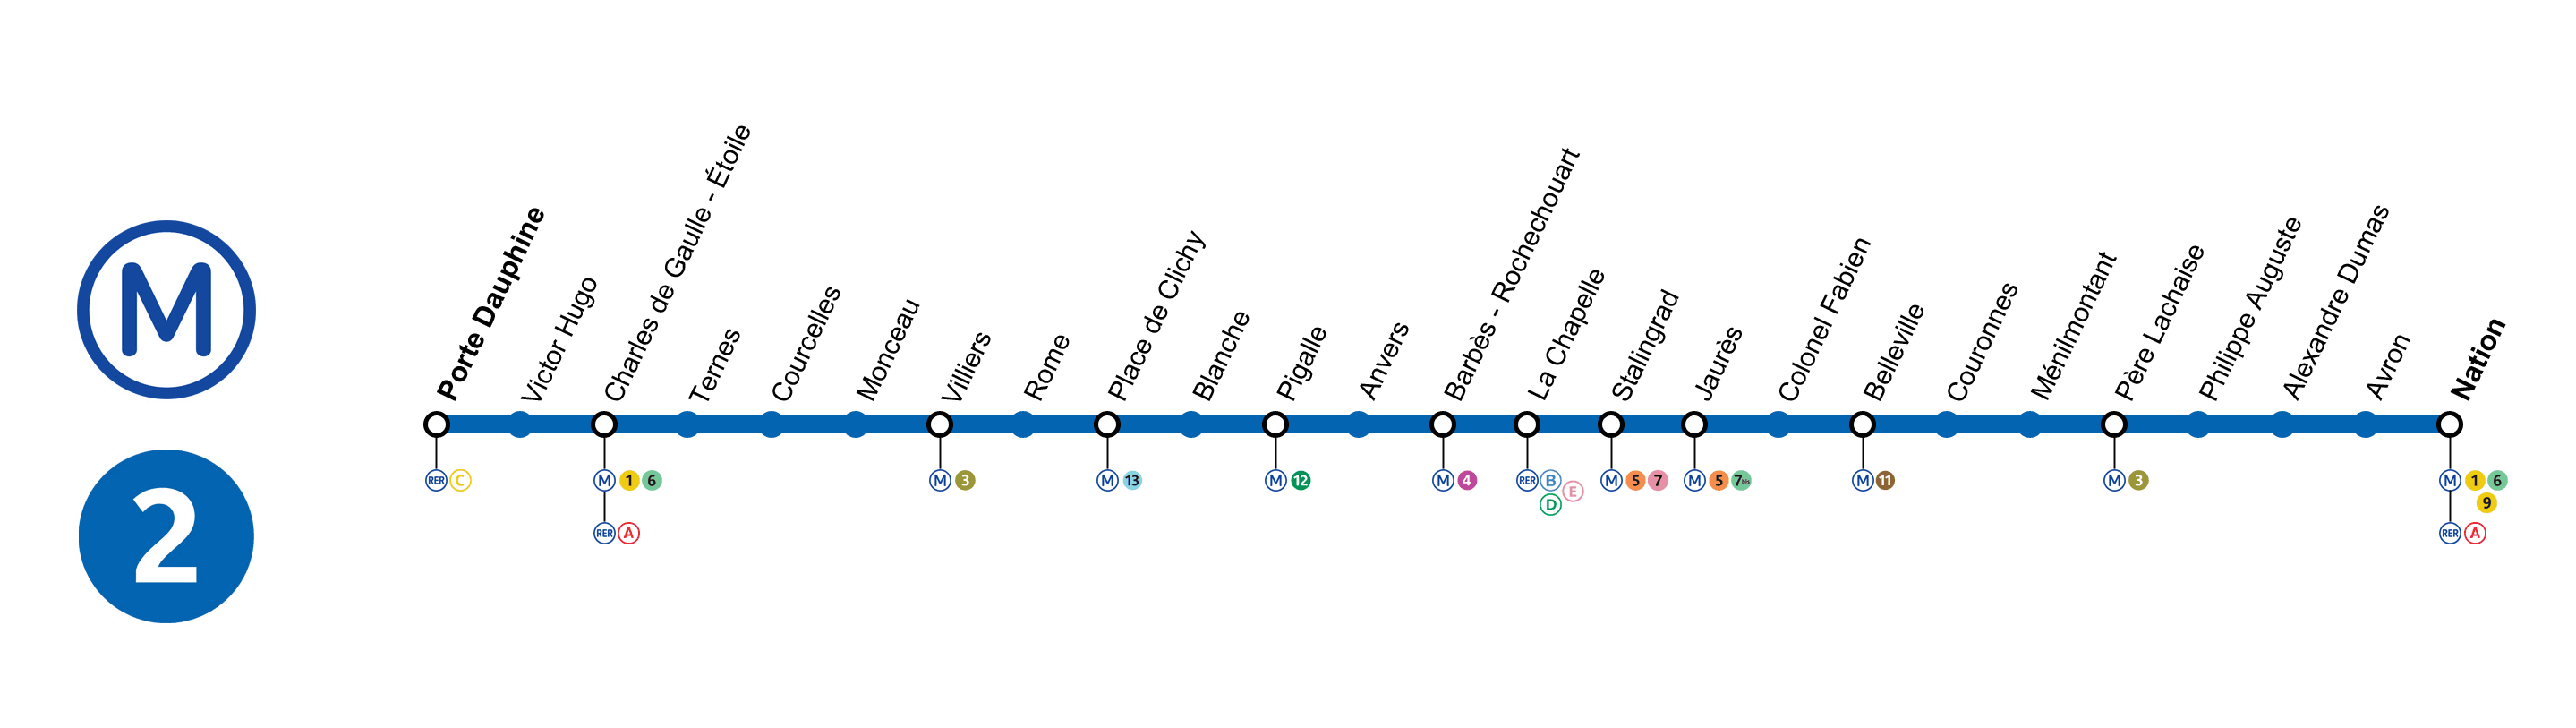 linea metro paris 2